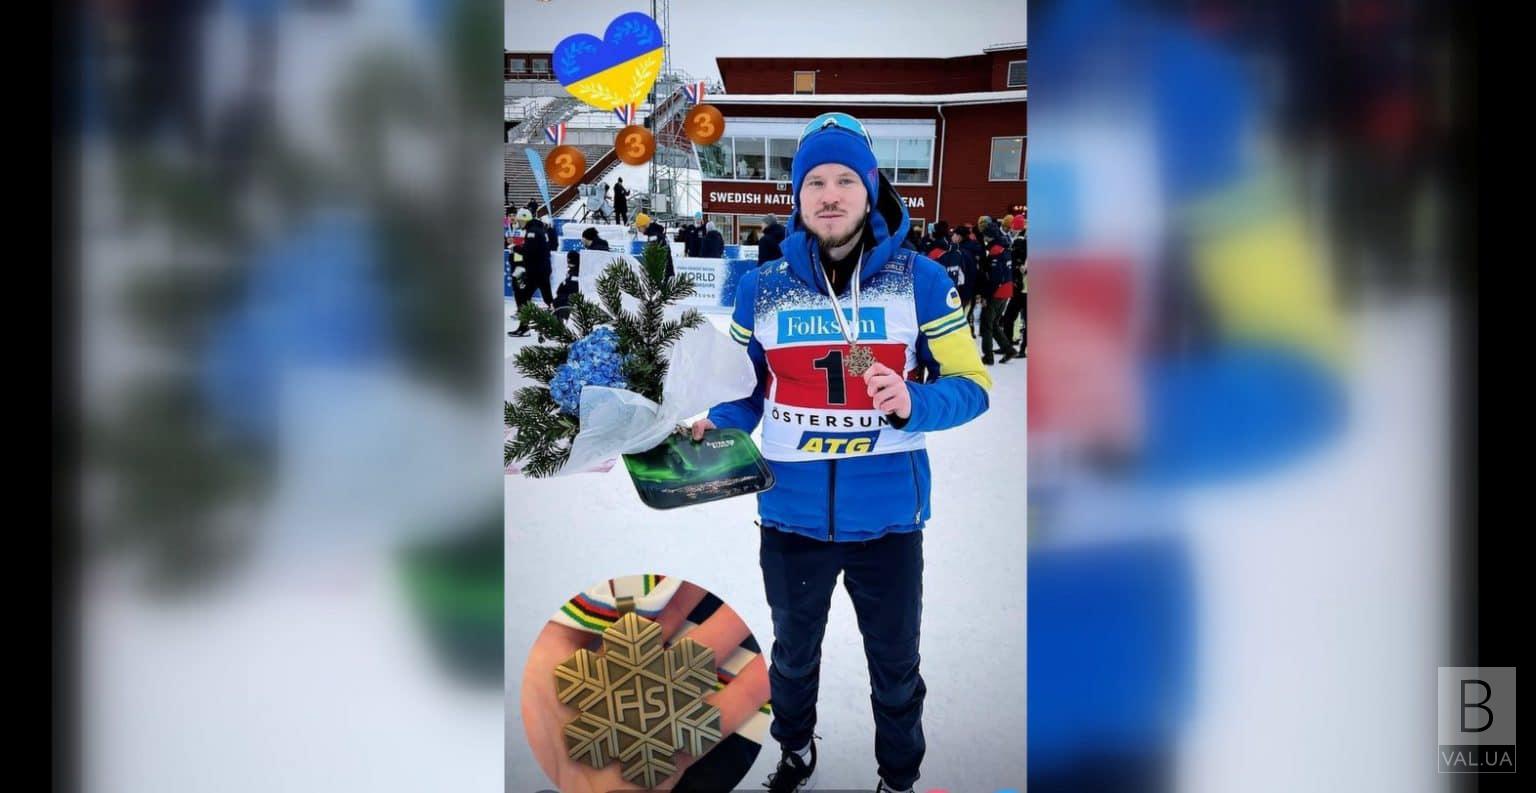 Чернігівець Дмитро Суярко виборов бронзу на Чемпіонаті світу з лижних перегонів